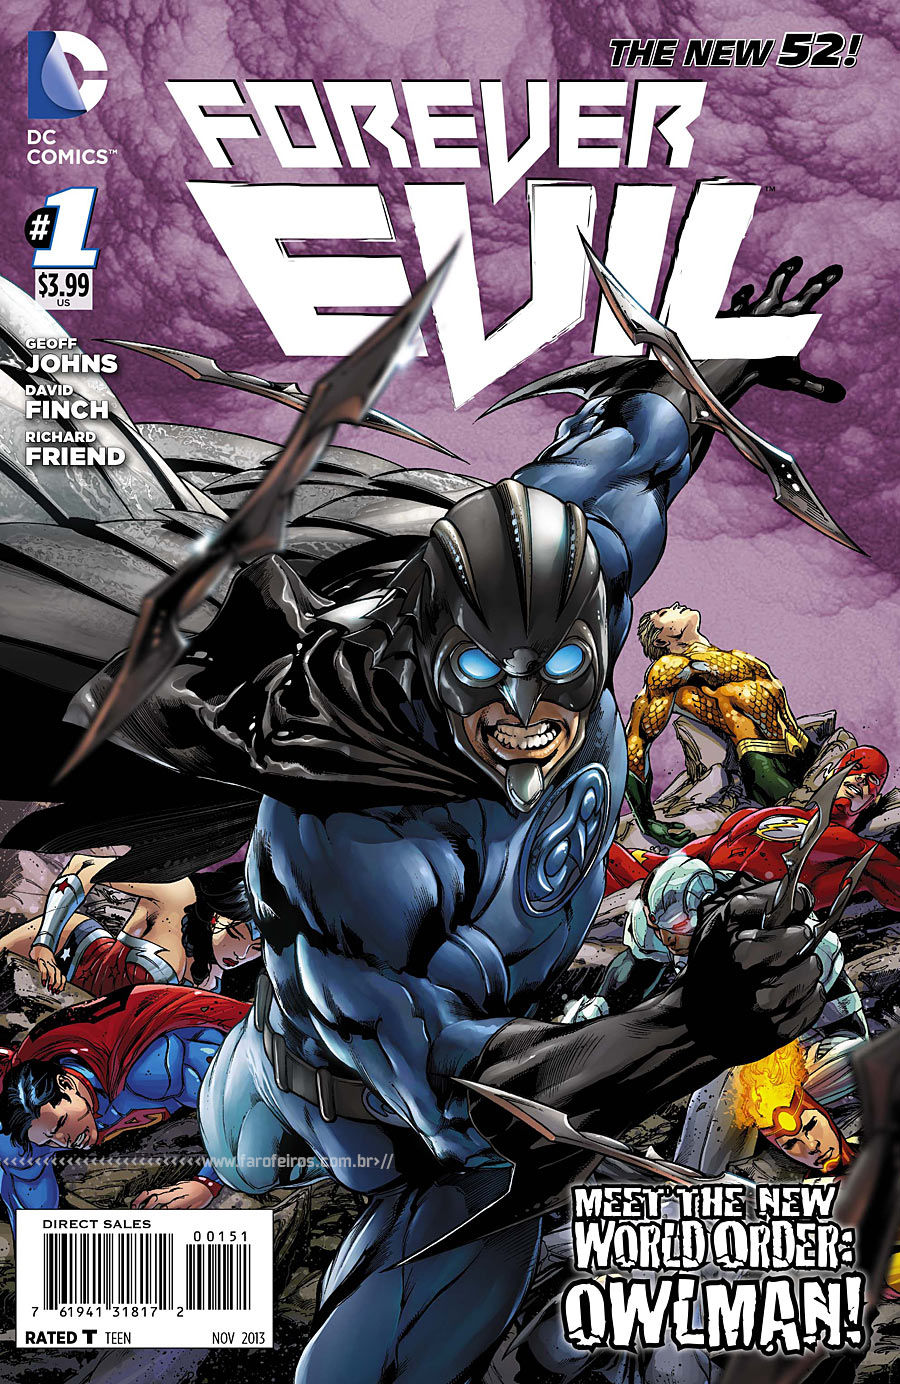 Preview de Forever Evil #1 - DC Comics - Blog Farofeiros